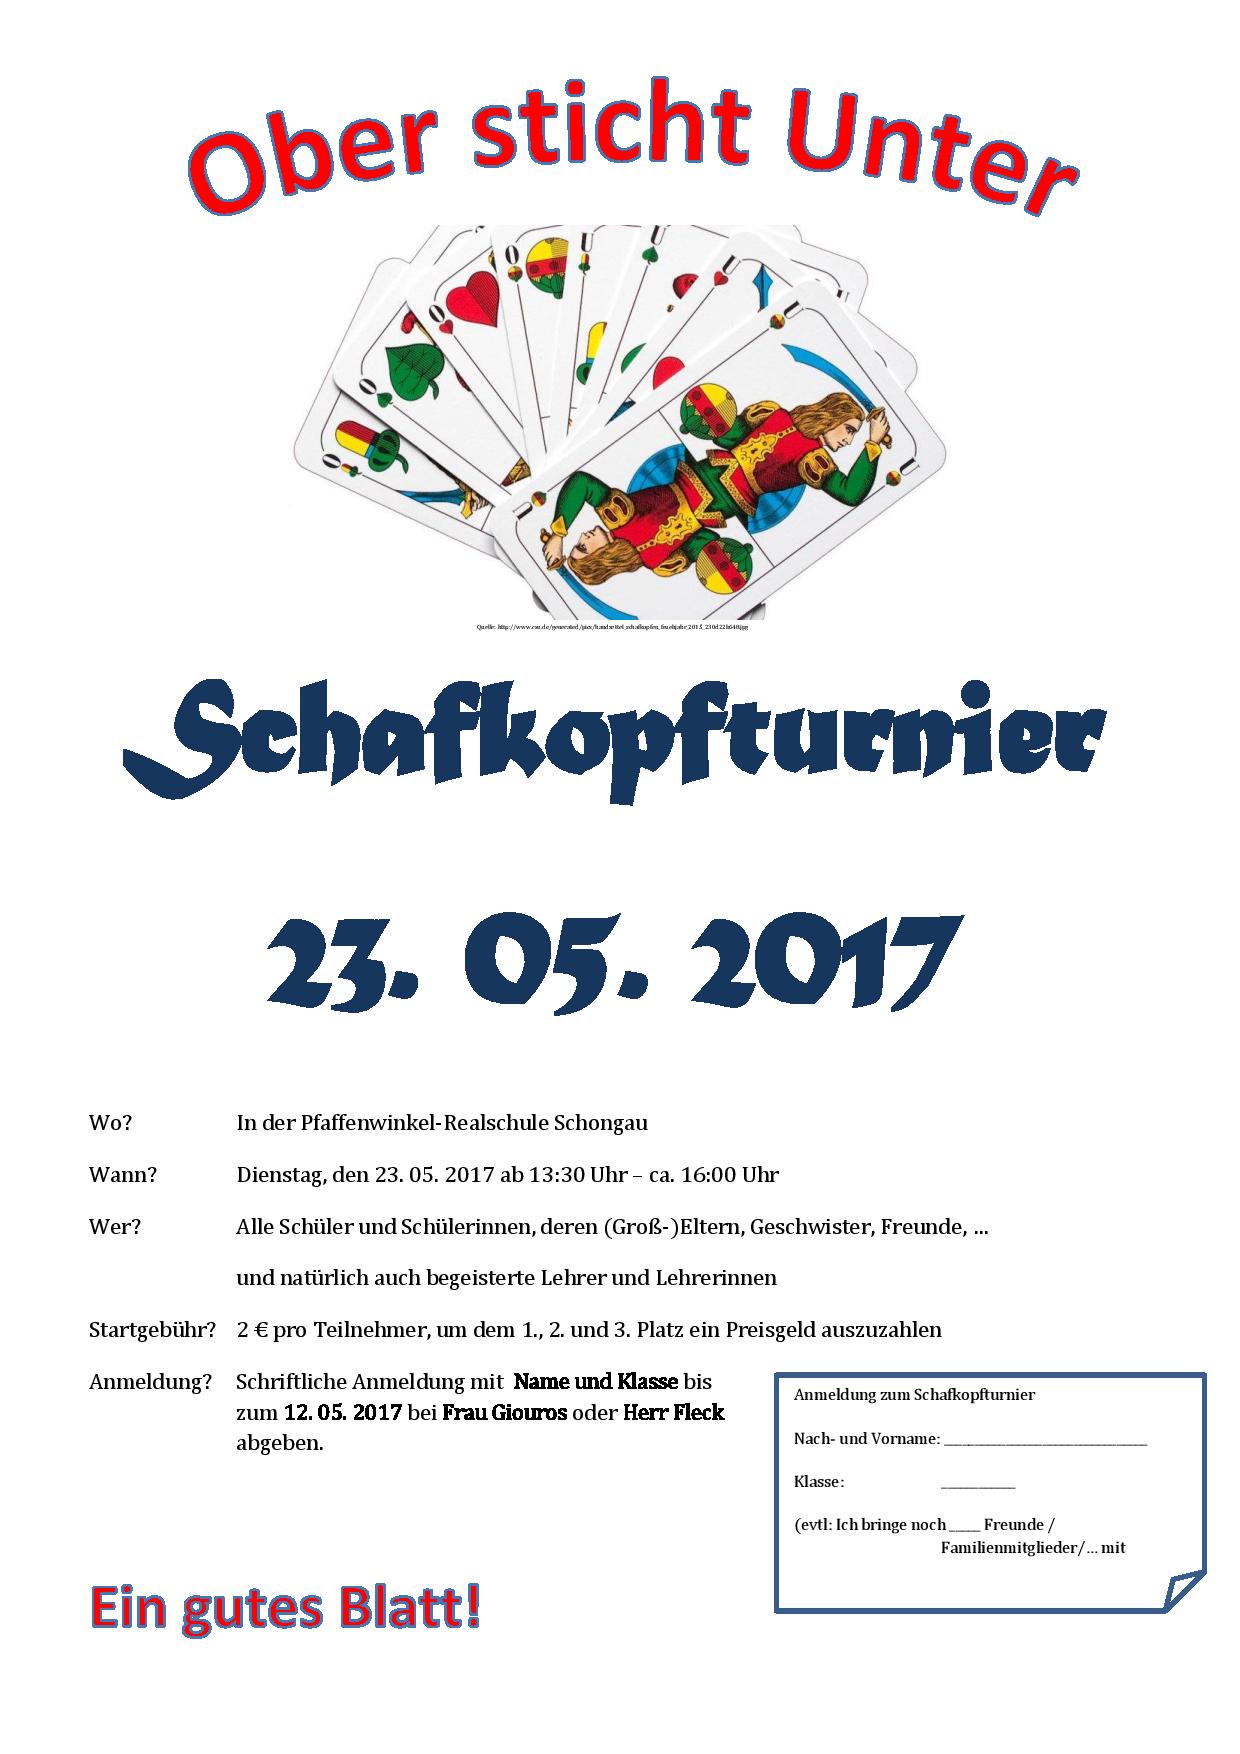 Schafkopftunier page 001